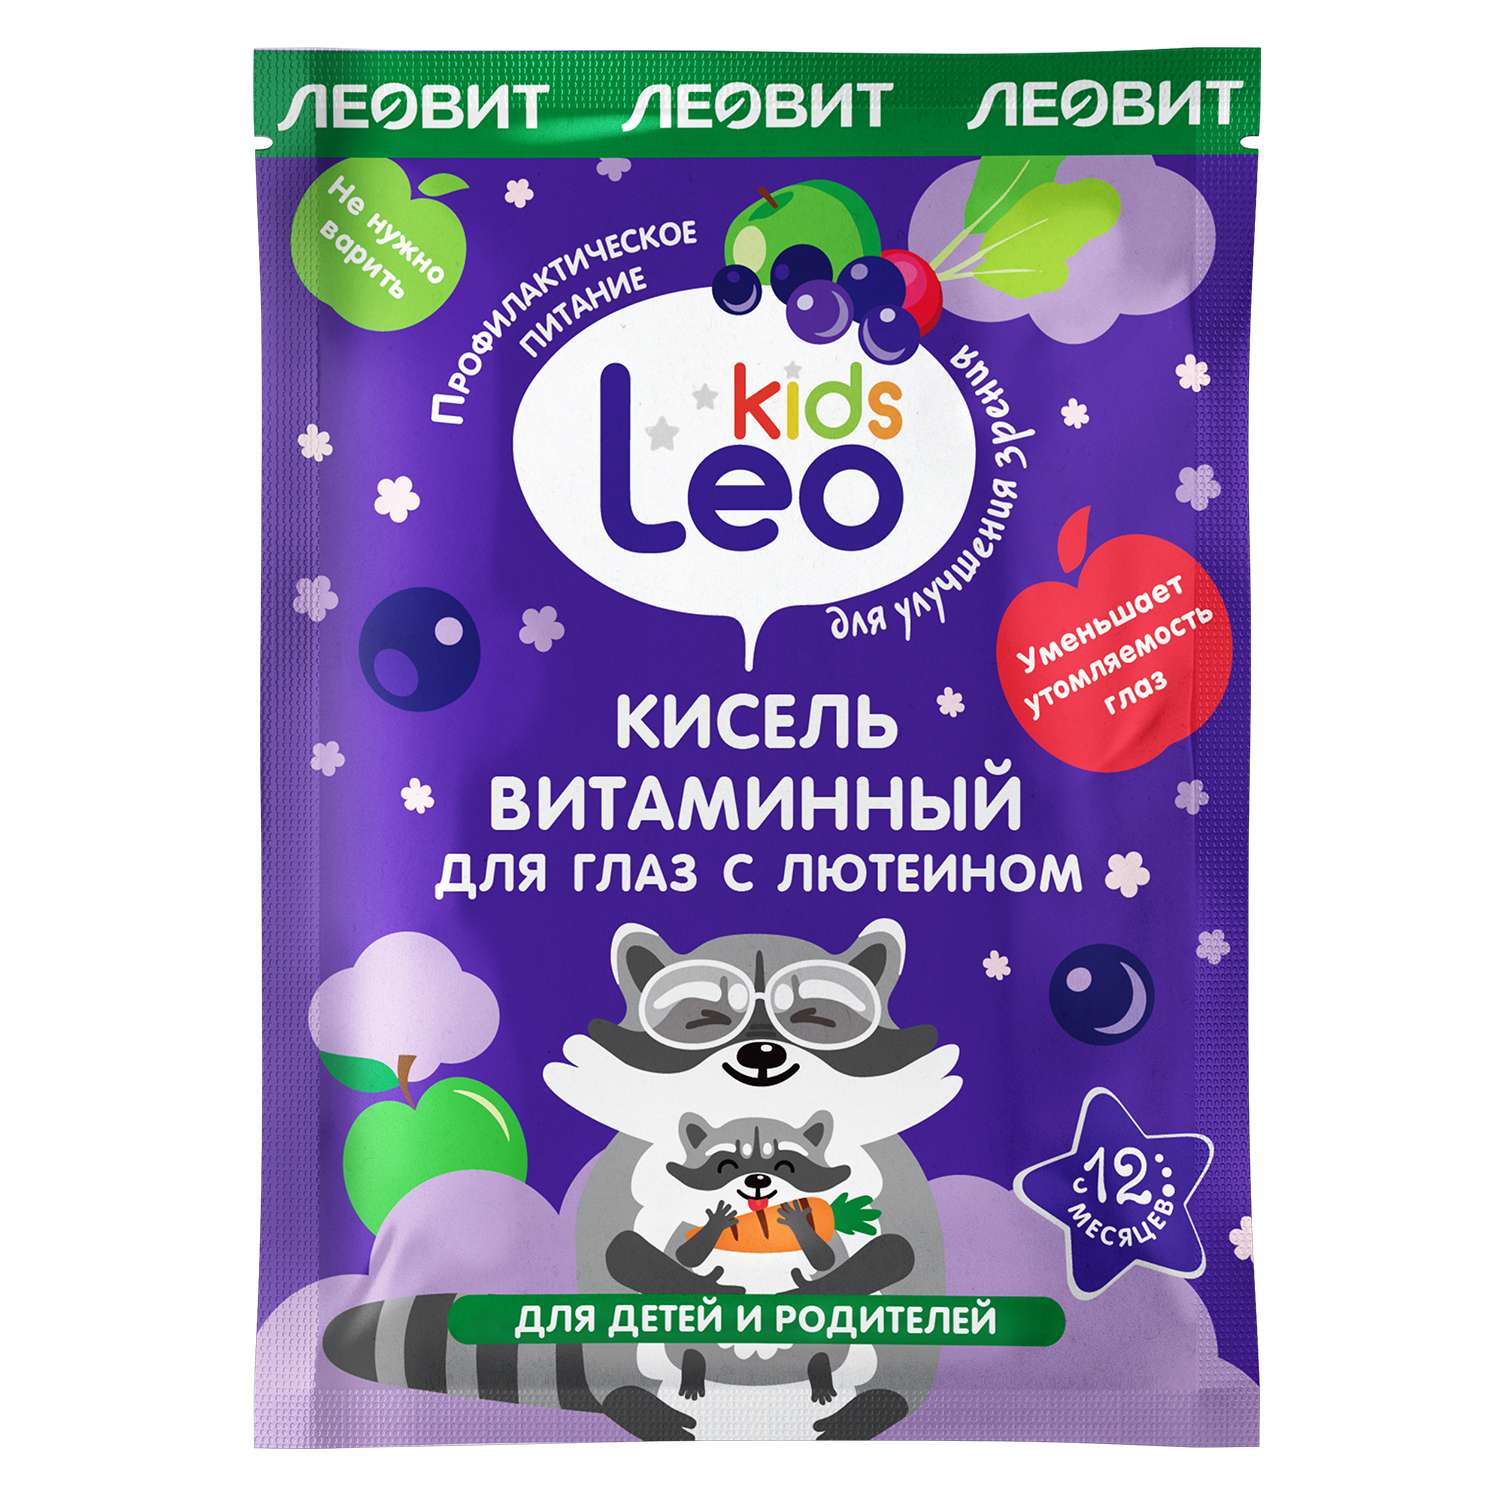 Кисель Леовит LeoKids витаминный для глаз с лютеином 12г*5пакетов - фото 3